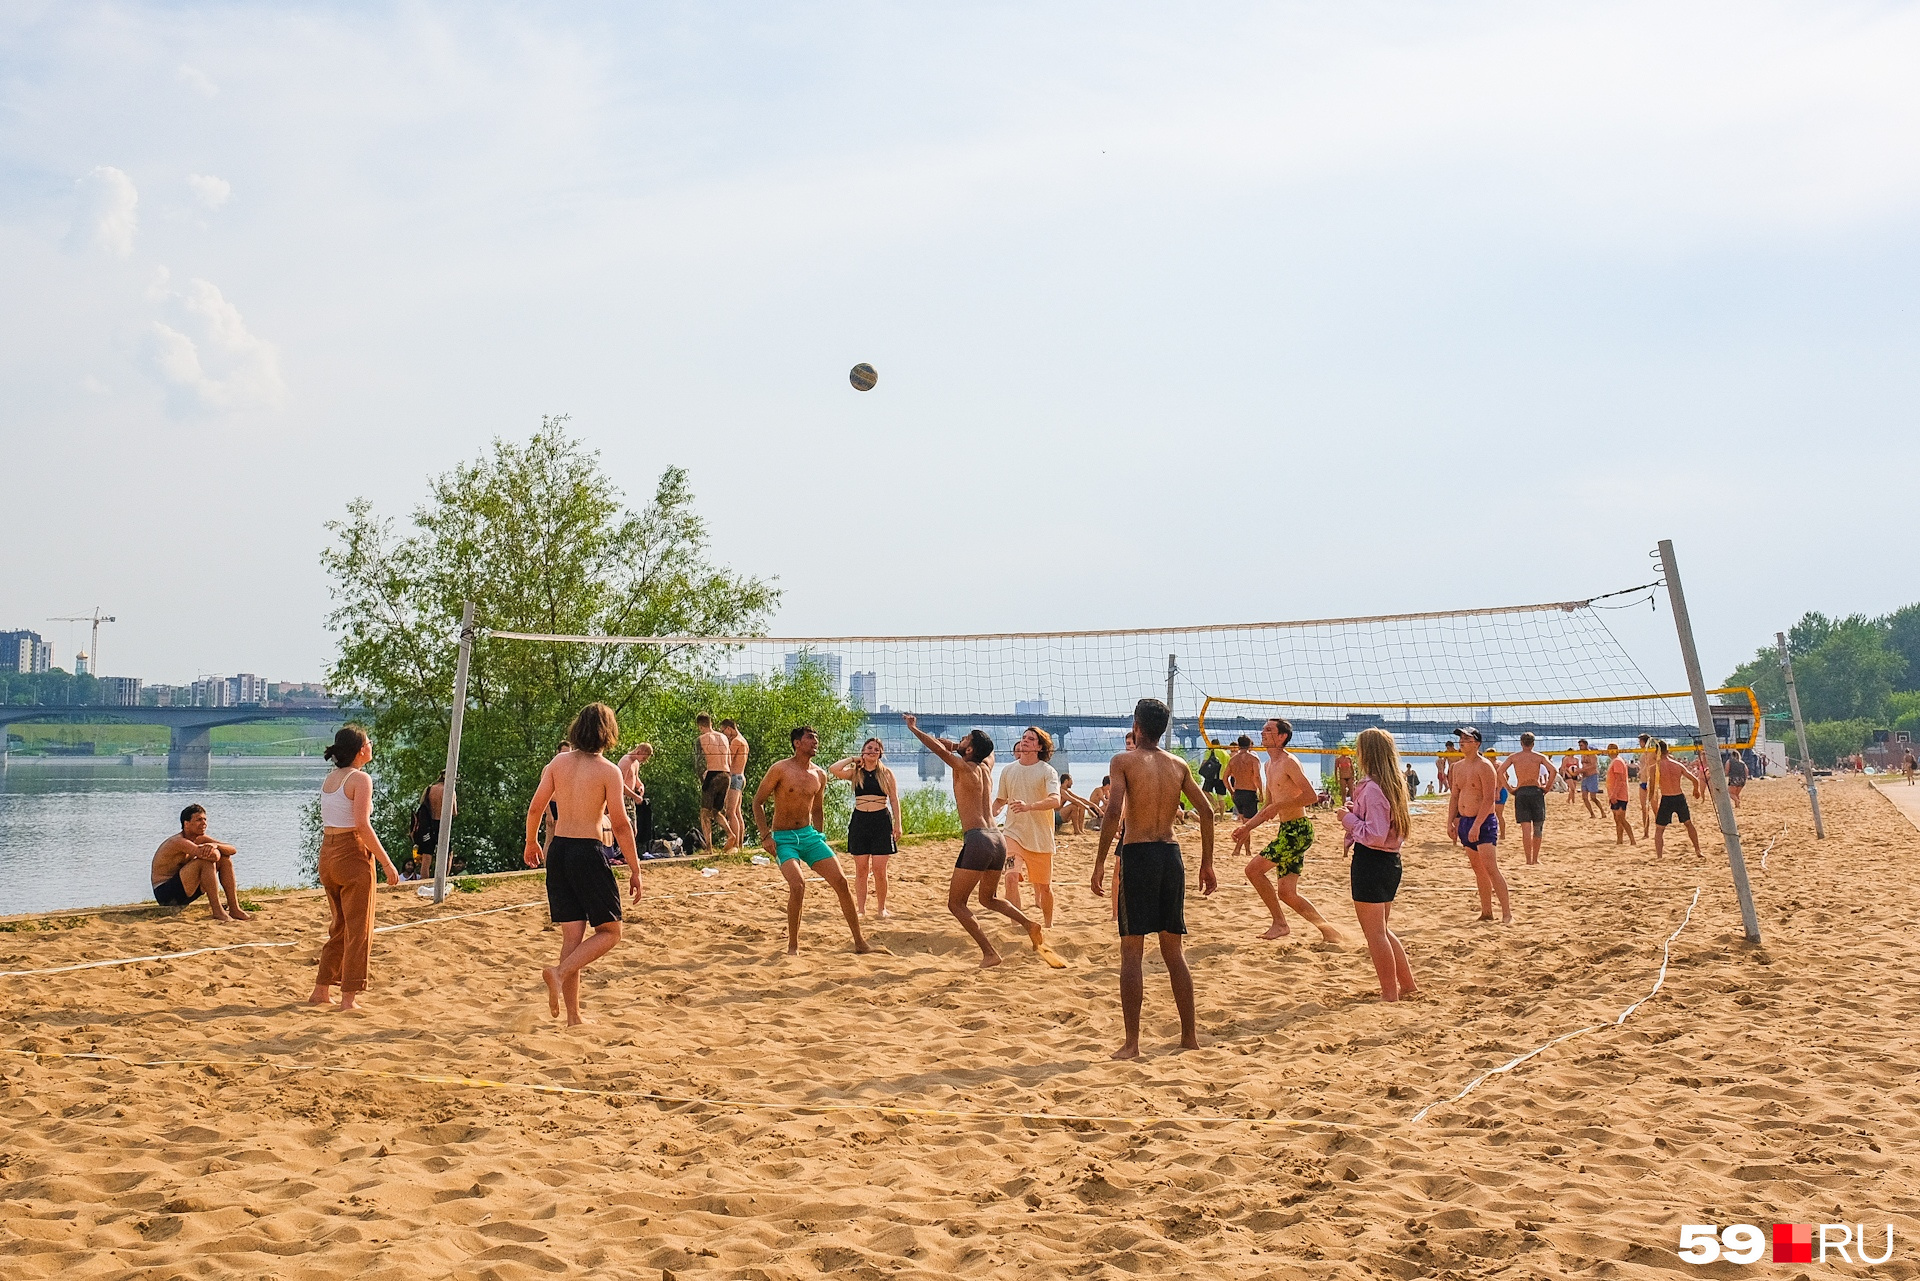 Посетители пляжа в центре Перми активнее тех, что приехали на КамГЭС, — здесь идет активная игра в волейбол